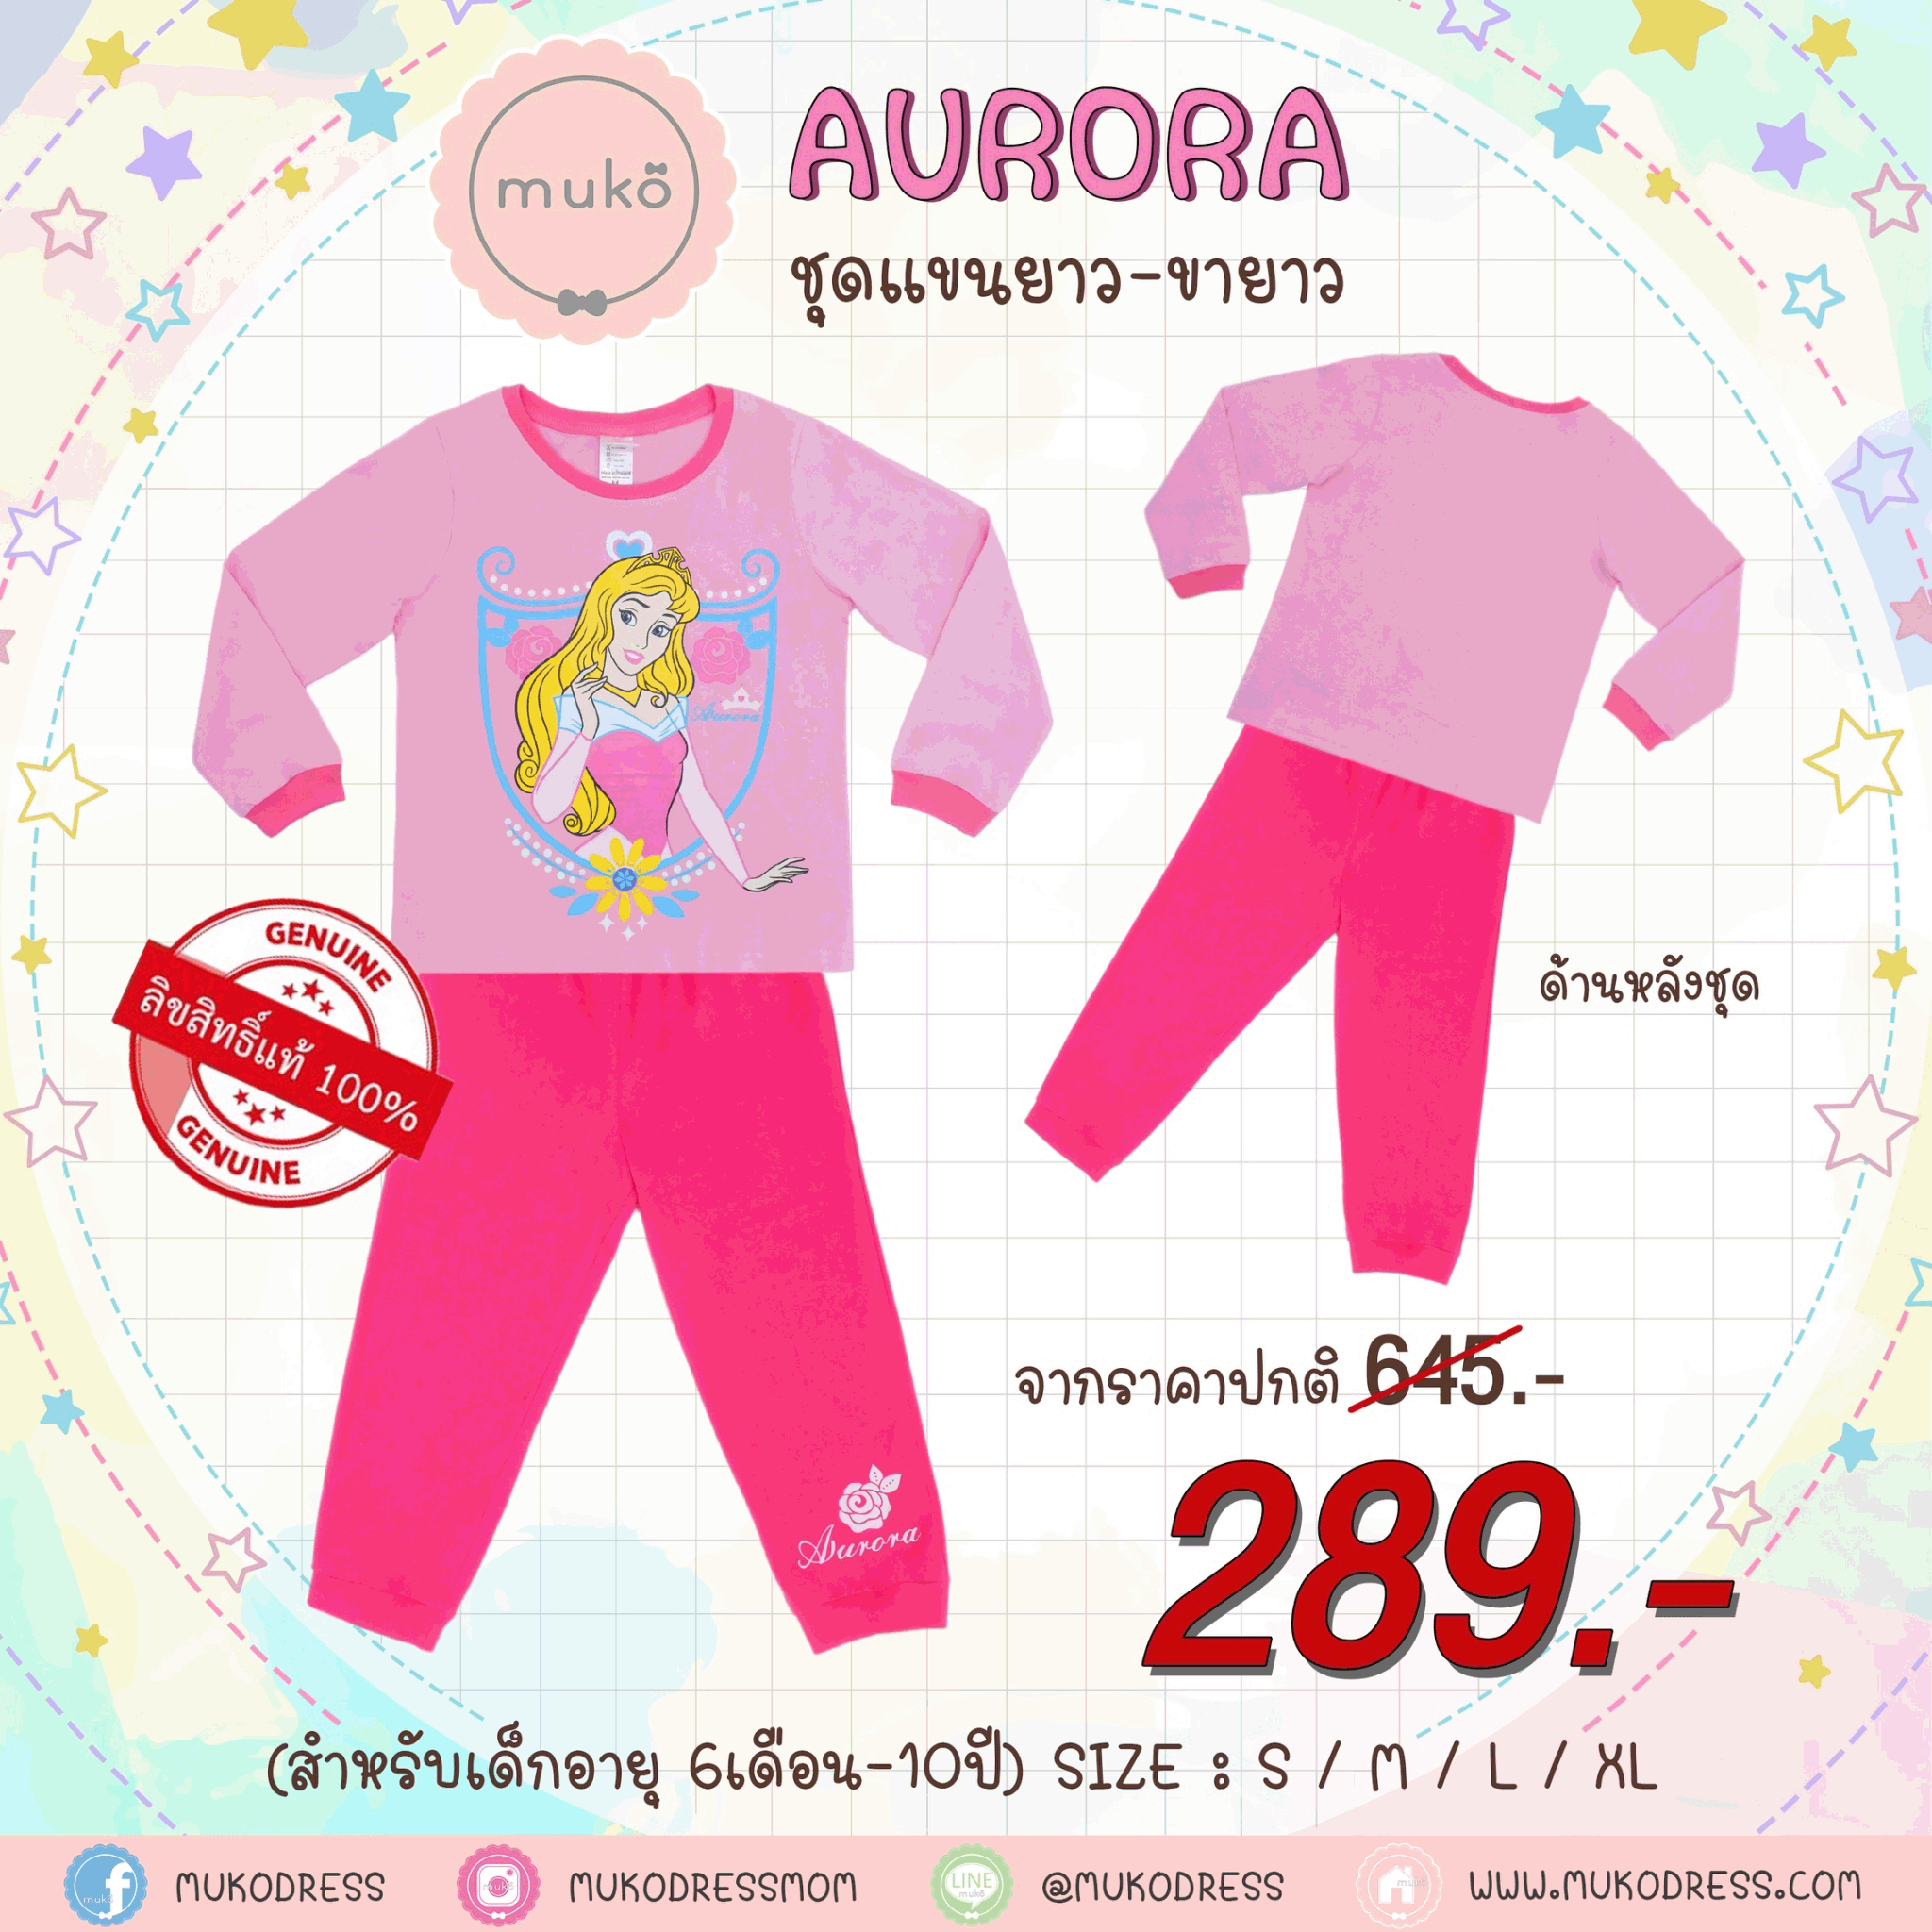 ชุดเด็ก 5-6 ขวบ แขนยาว-ขายาว (Size M) DPC127-12-XL-Light Pink M ลาย เจ้าหญิงออโรร่า Aurora สีชมพูอ่อน (ชมพูอ่อน)